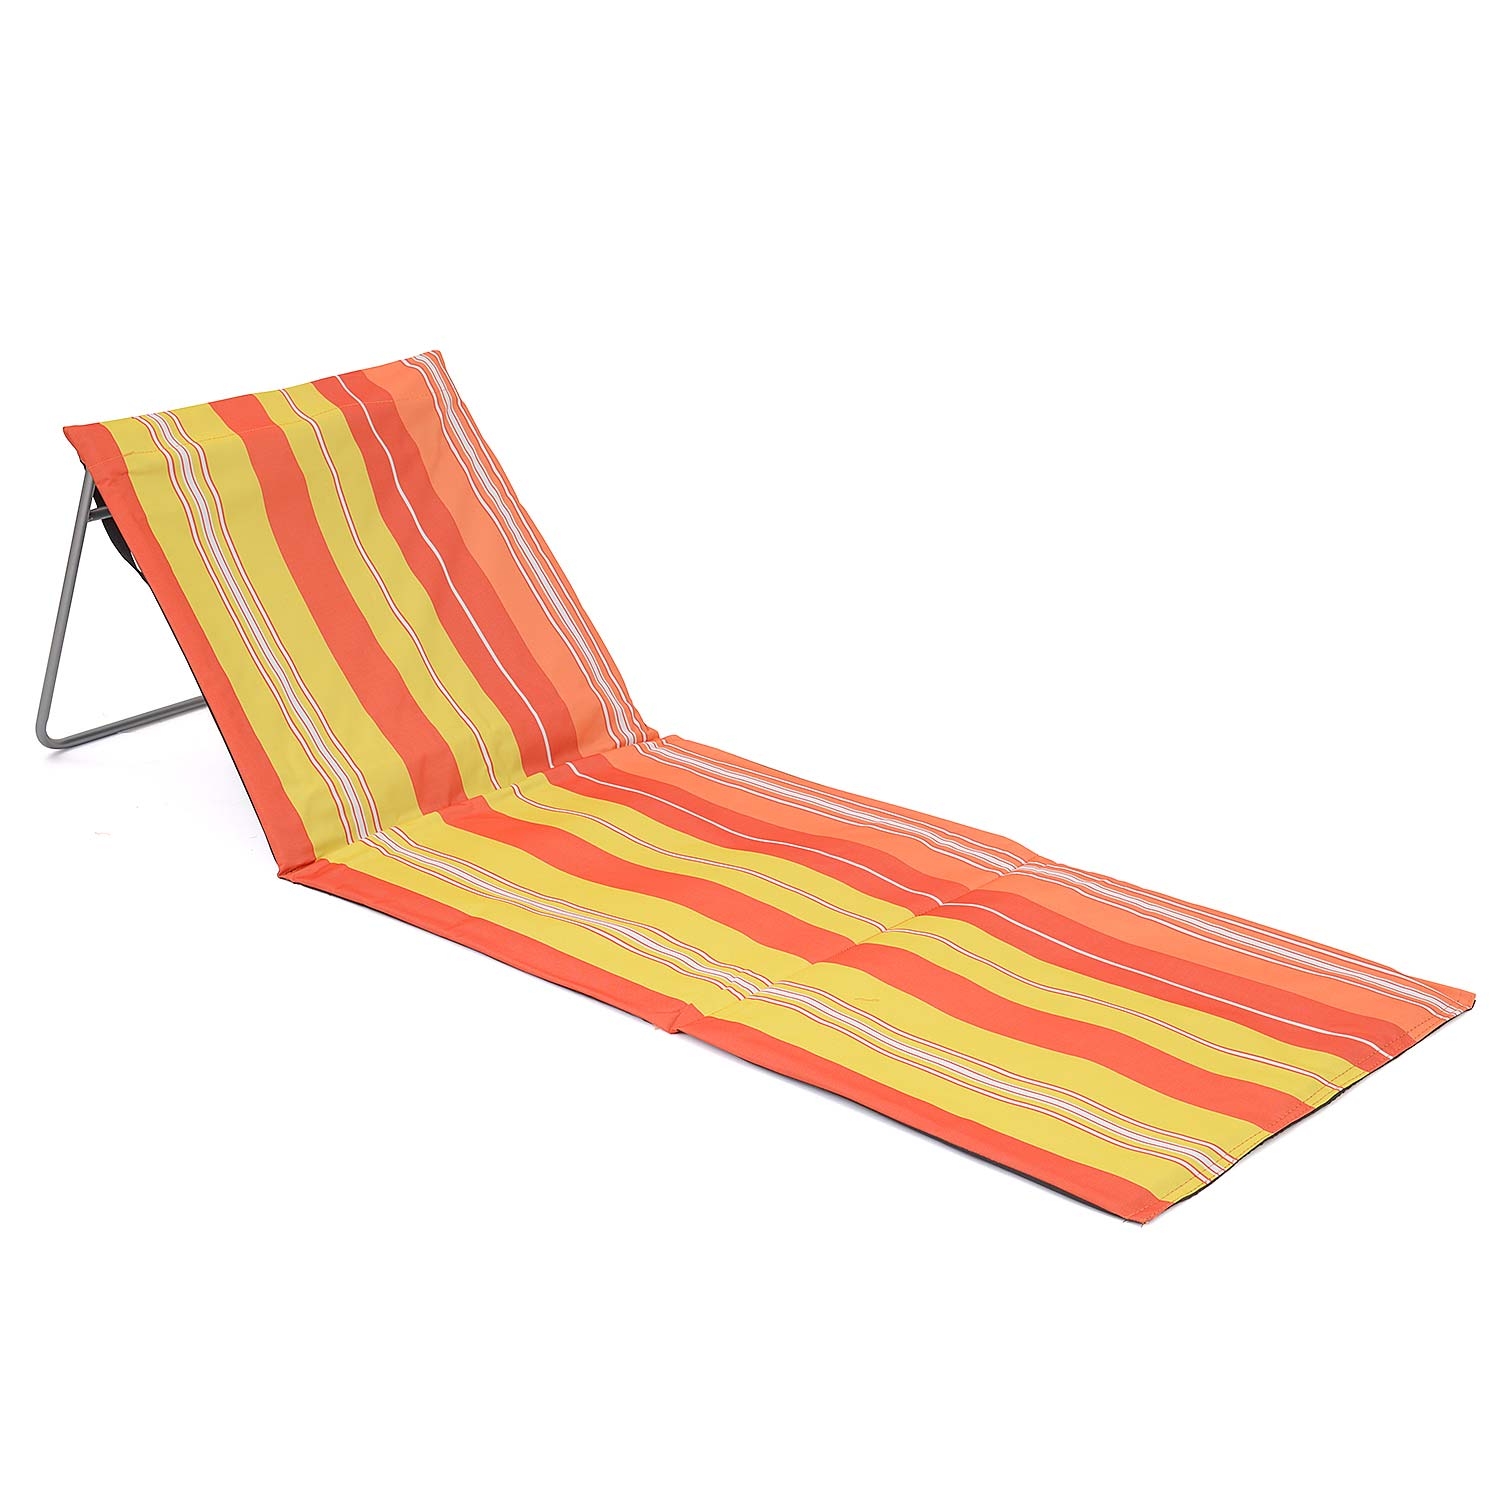 Folding Sun Lounger Beach Mat With Backrest - Orange